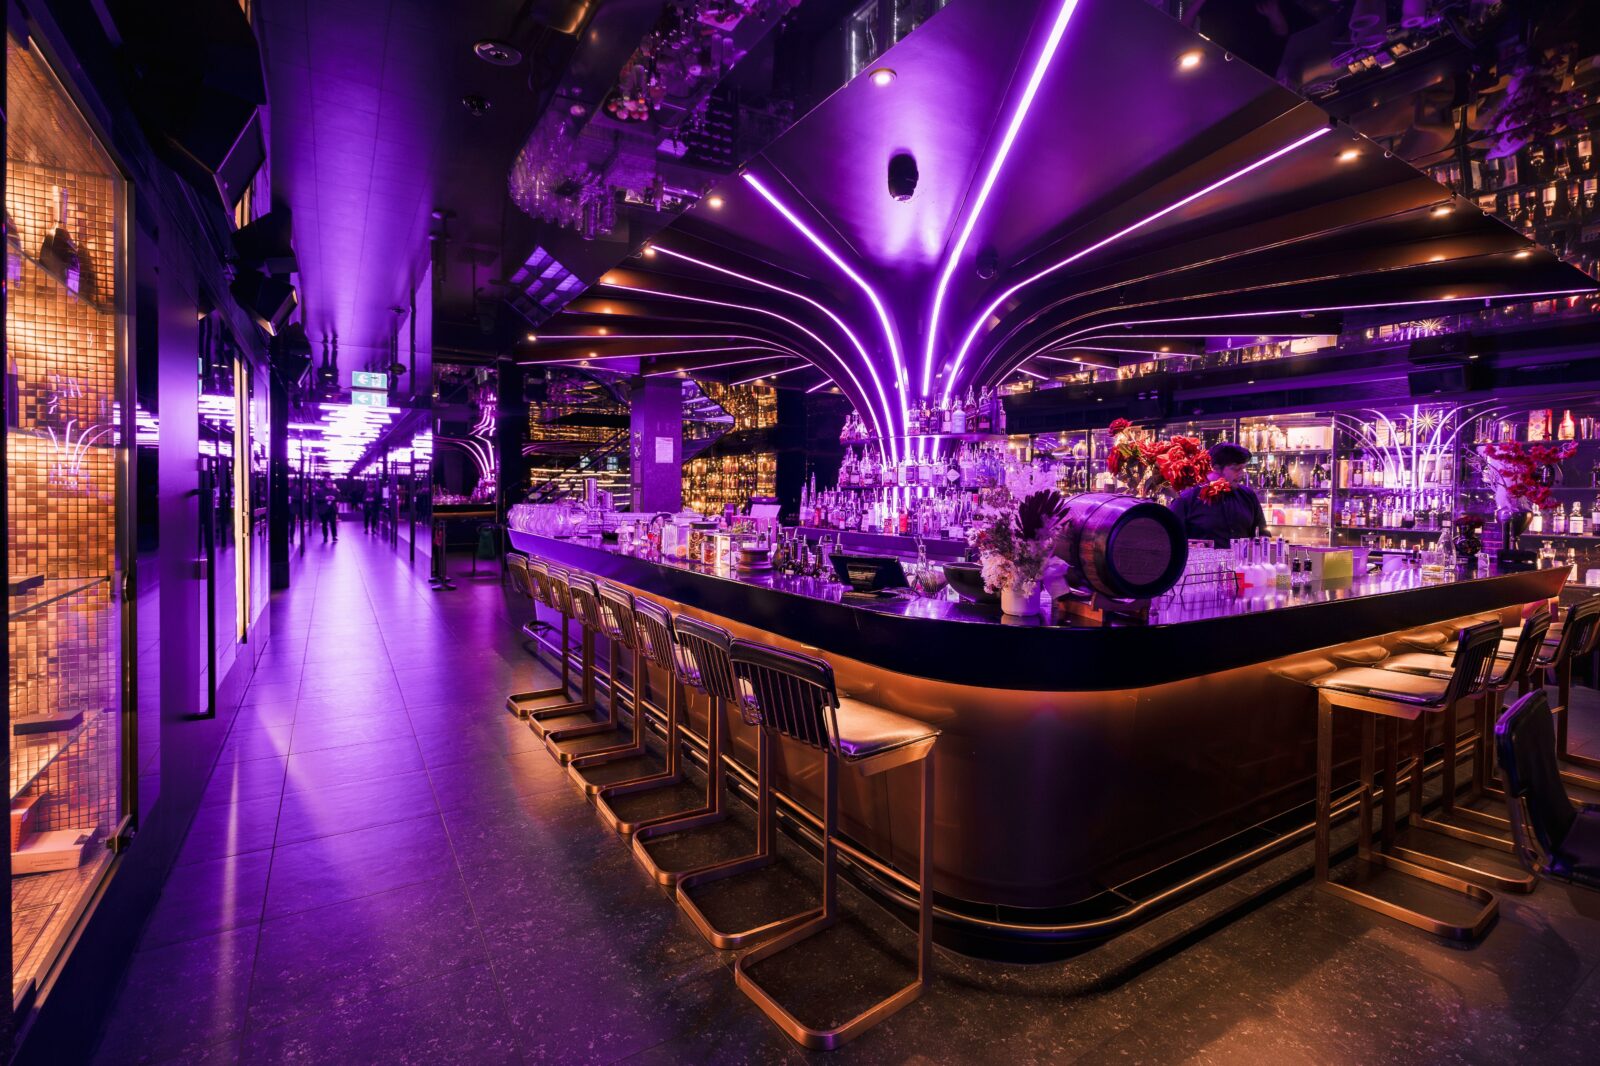 A purple neon lit cocktail bar